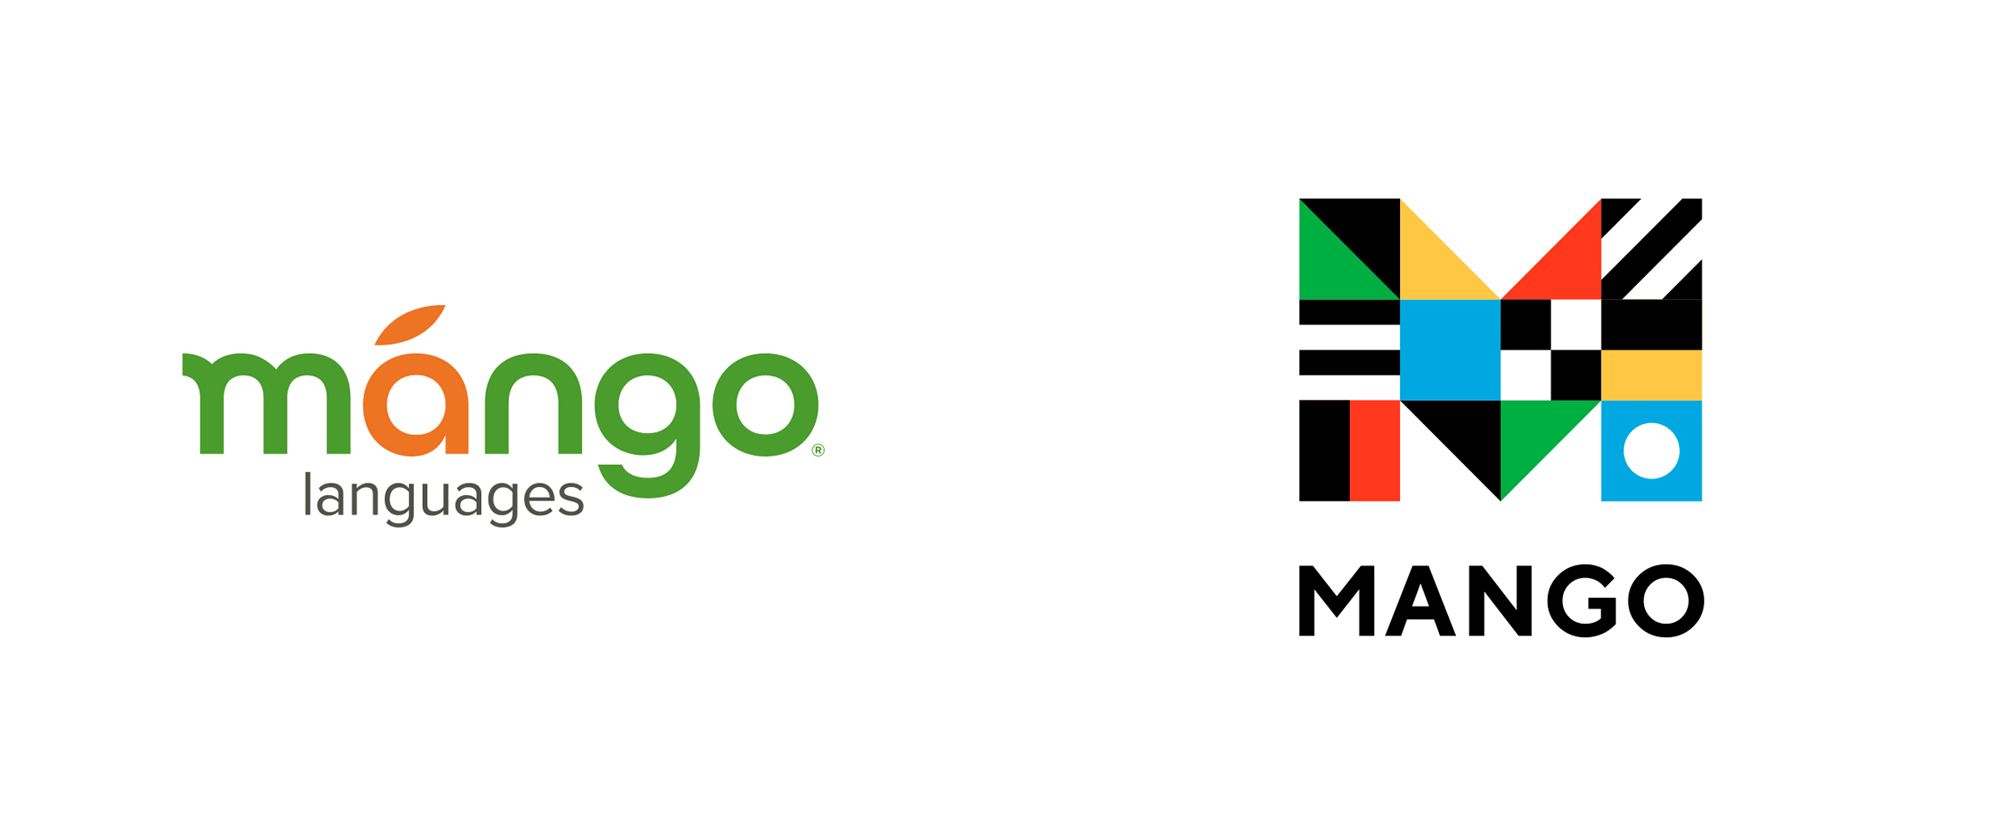 Mango Logo PNG - 178669